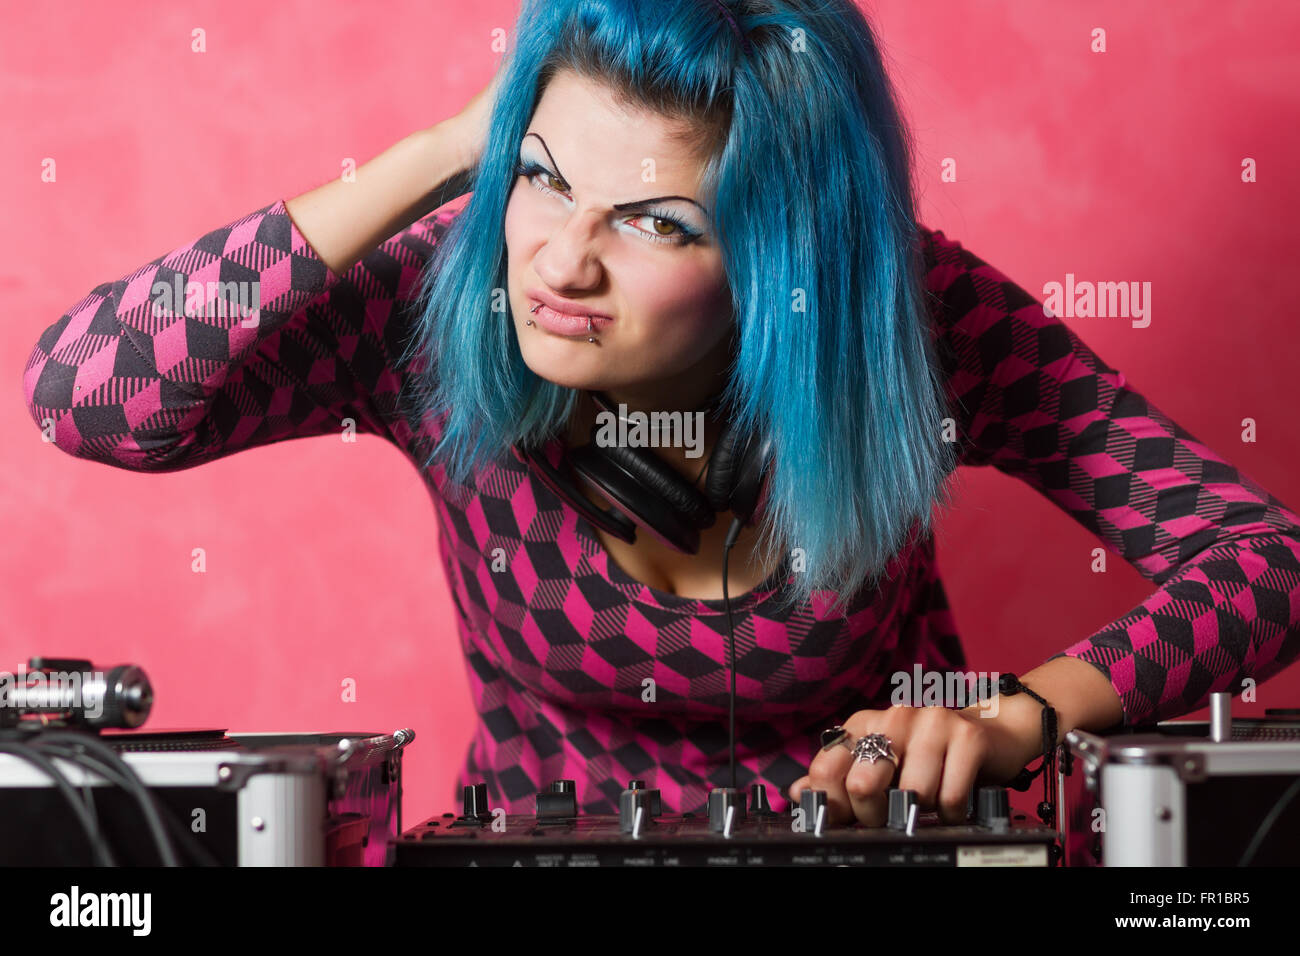 Linda chica con azul teñido de hari y traje rosa reproduciendo música registros en un equipo profesional Foto de stock